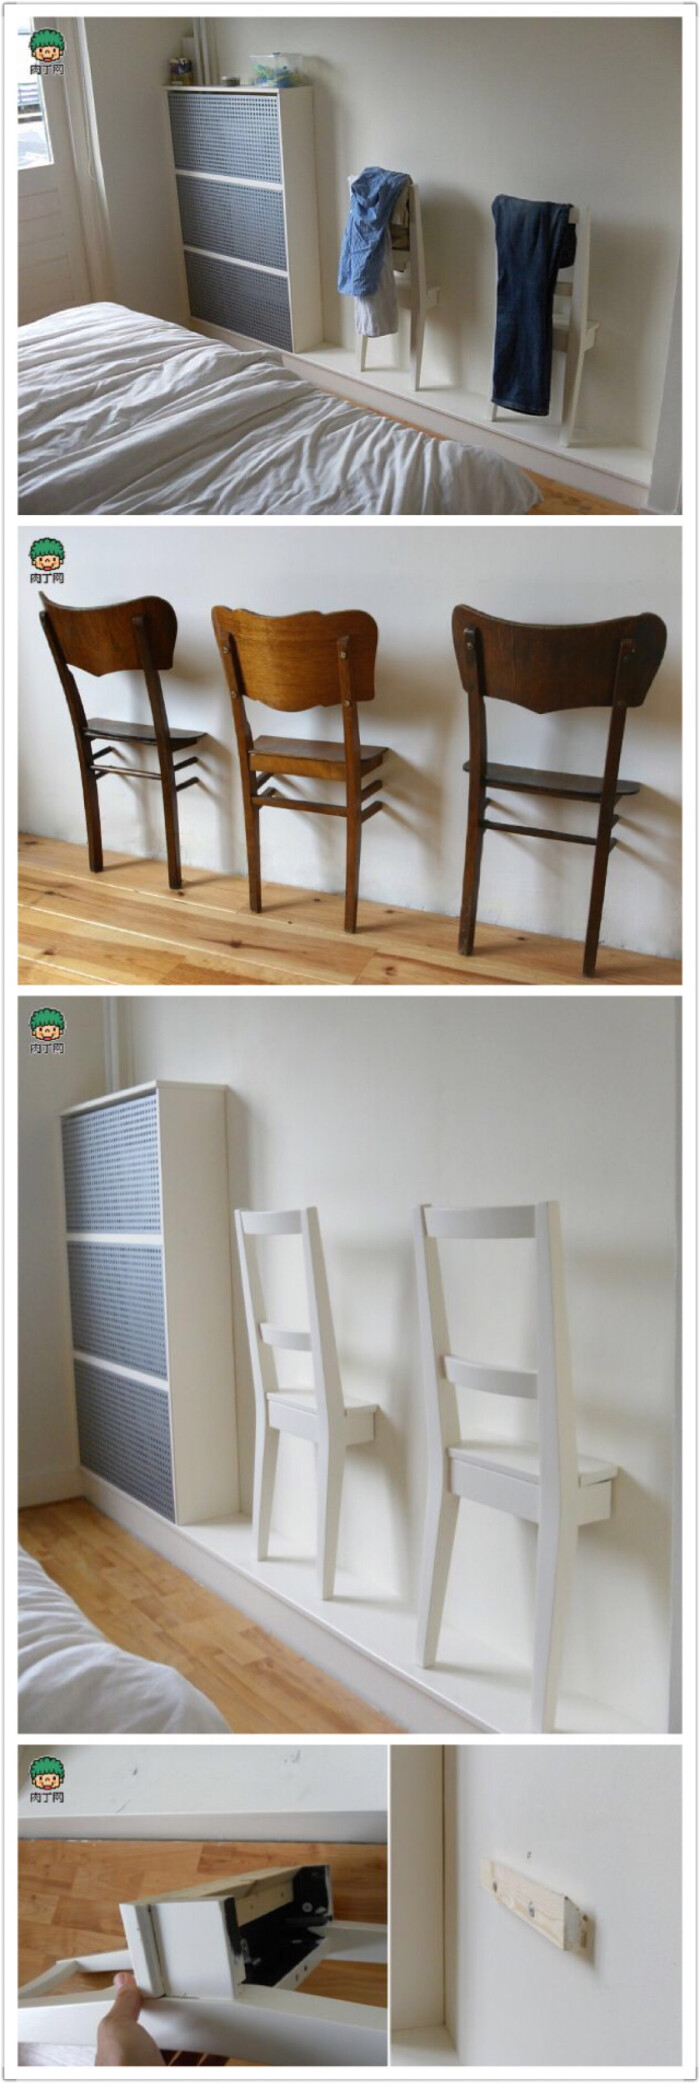 旧家具的创新设计半嵌入式椅子衣架手工diy 堆糖 美图壁纸兴趣社区